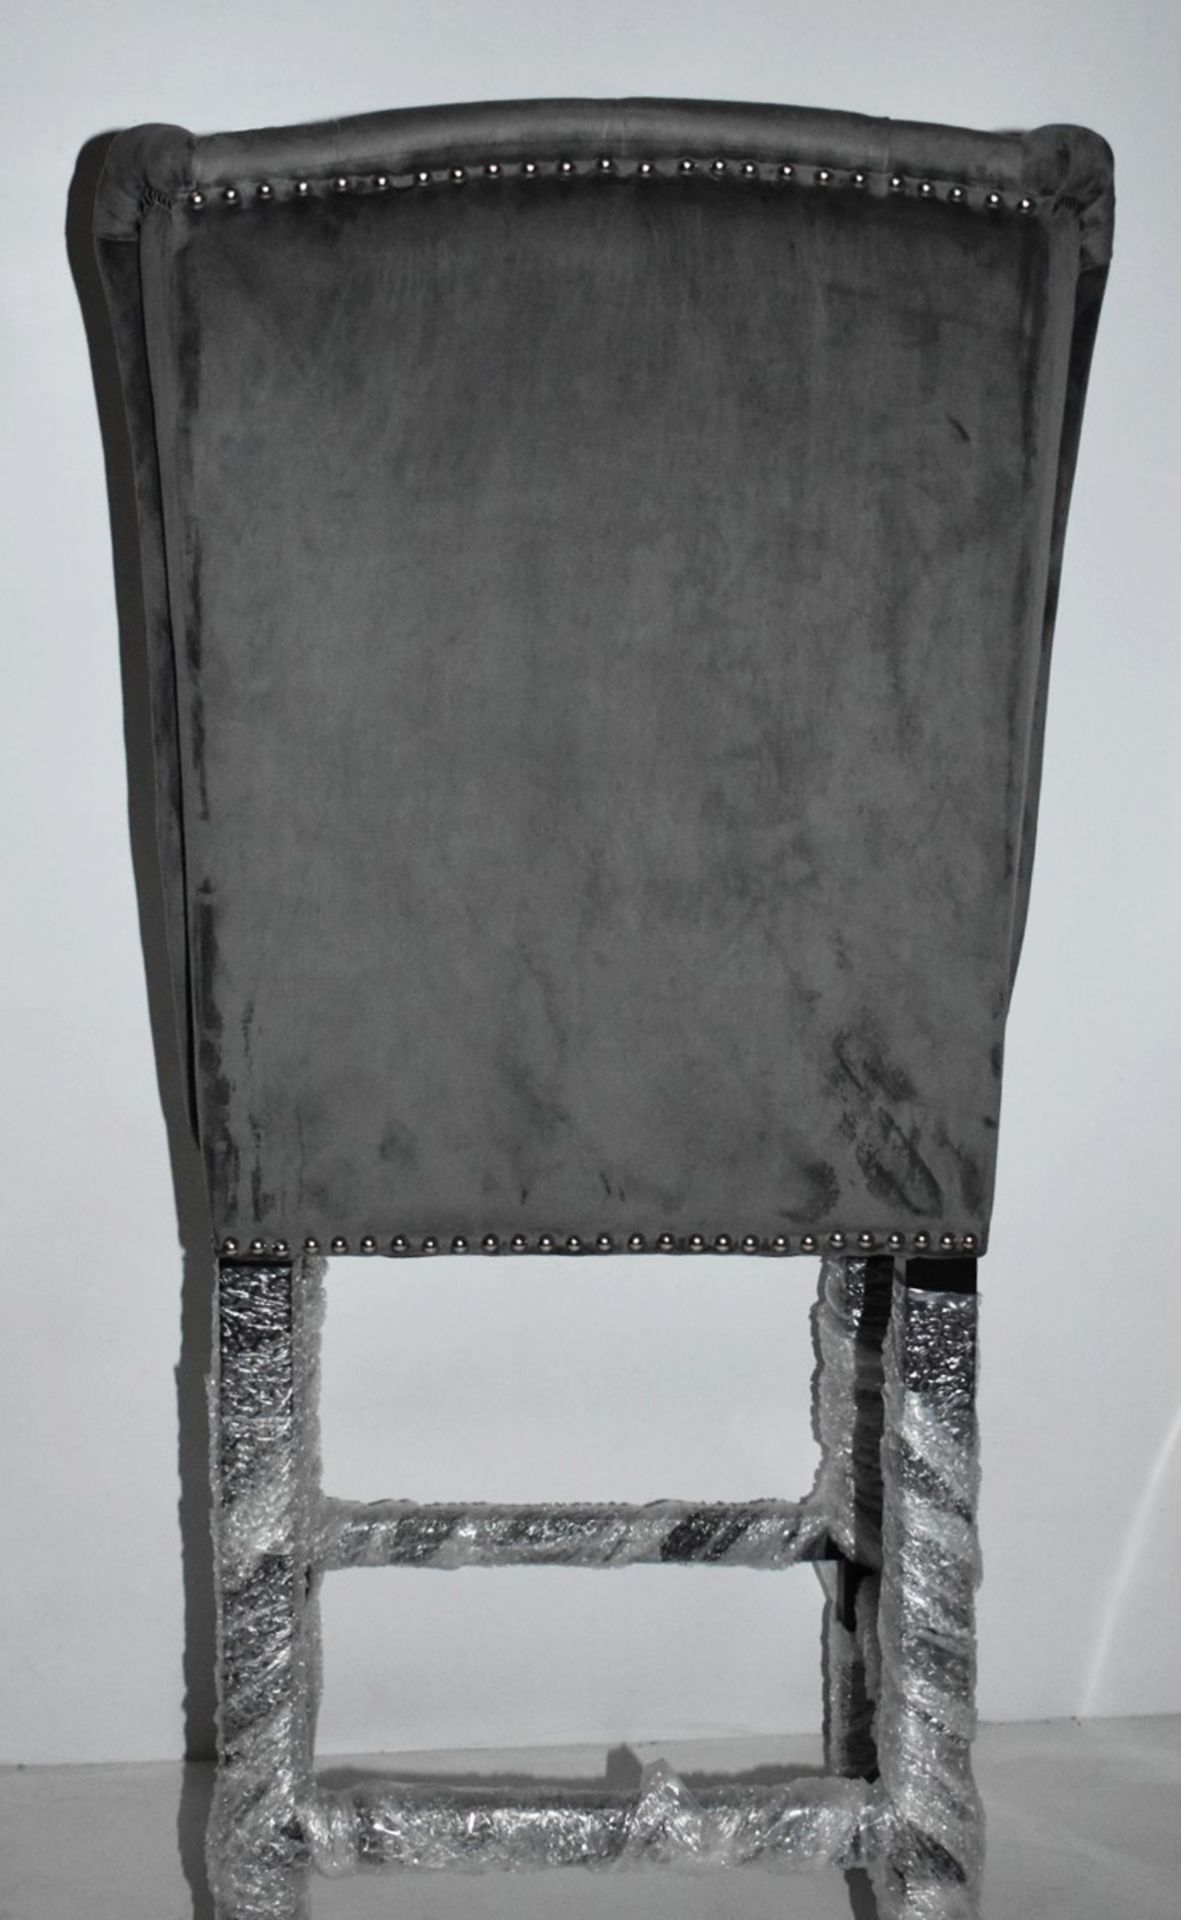 2 x HOUSE OF SPARKLES Luxury Wing Back Bar Stools Richly Upholstered In Dark Grey Velvet - Brand New - Image 9 of 12